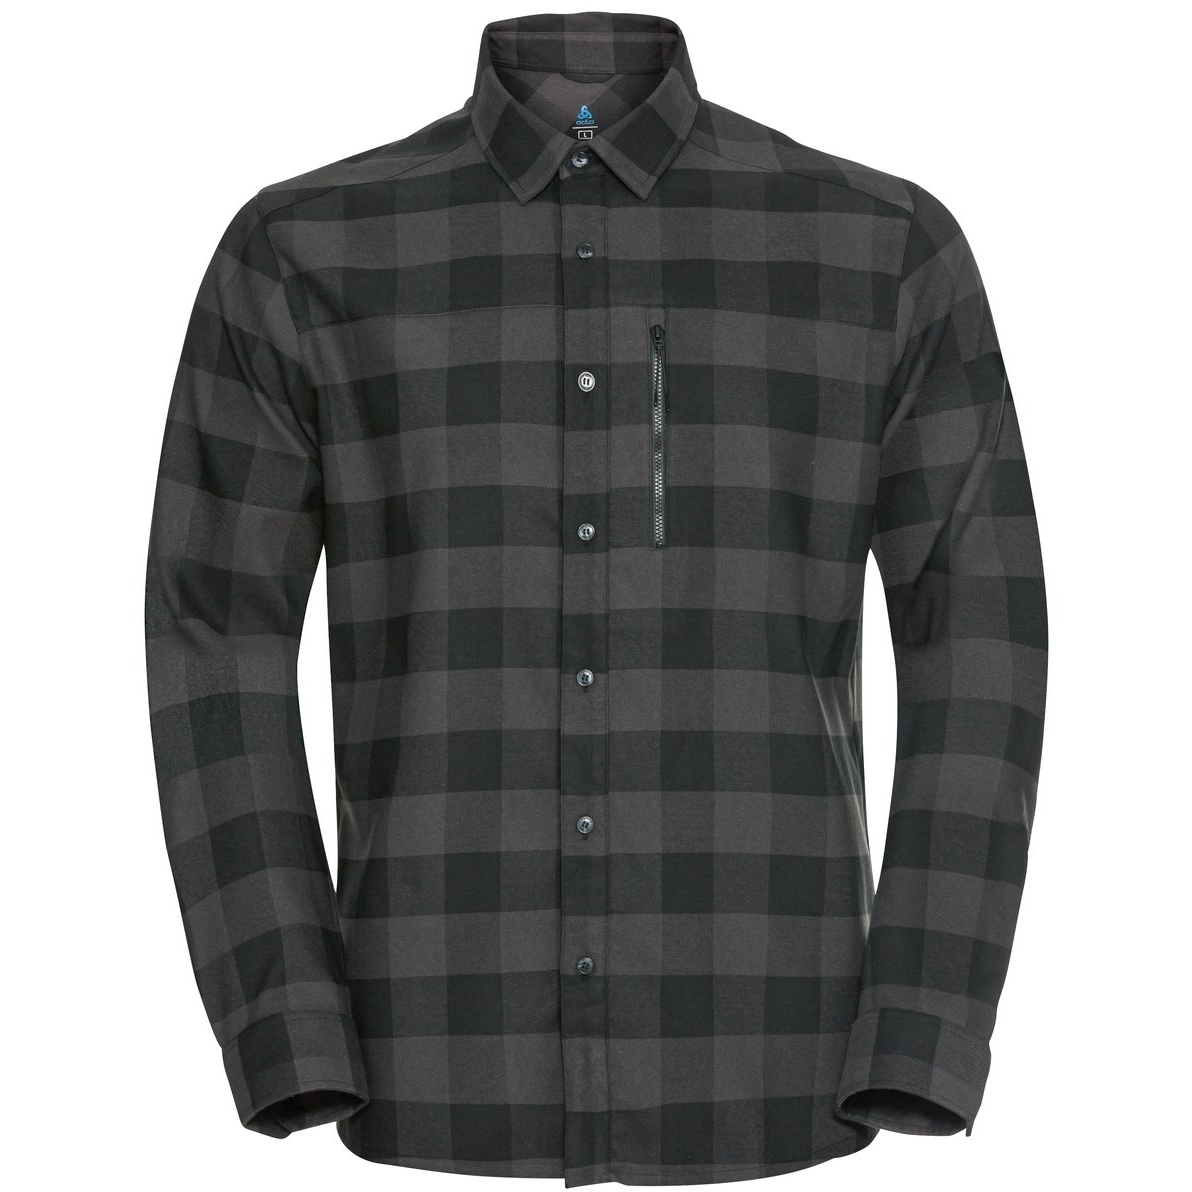 Productfoto van Odlo Halden Overhemd met Lange Mouwen Heren - zwart - new odlo graphite grey